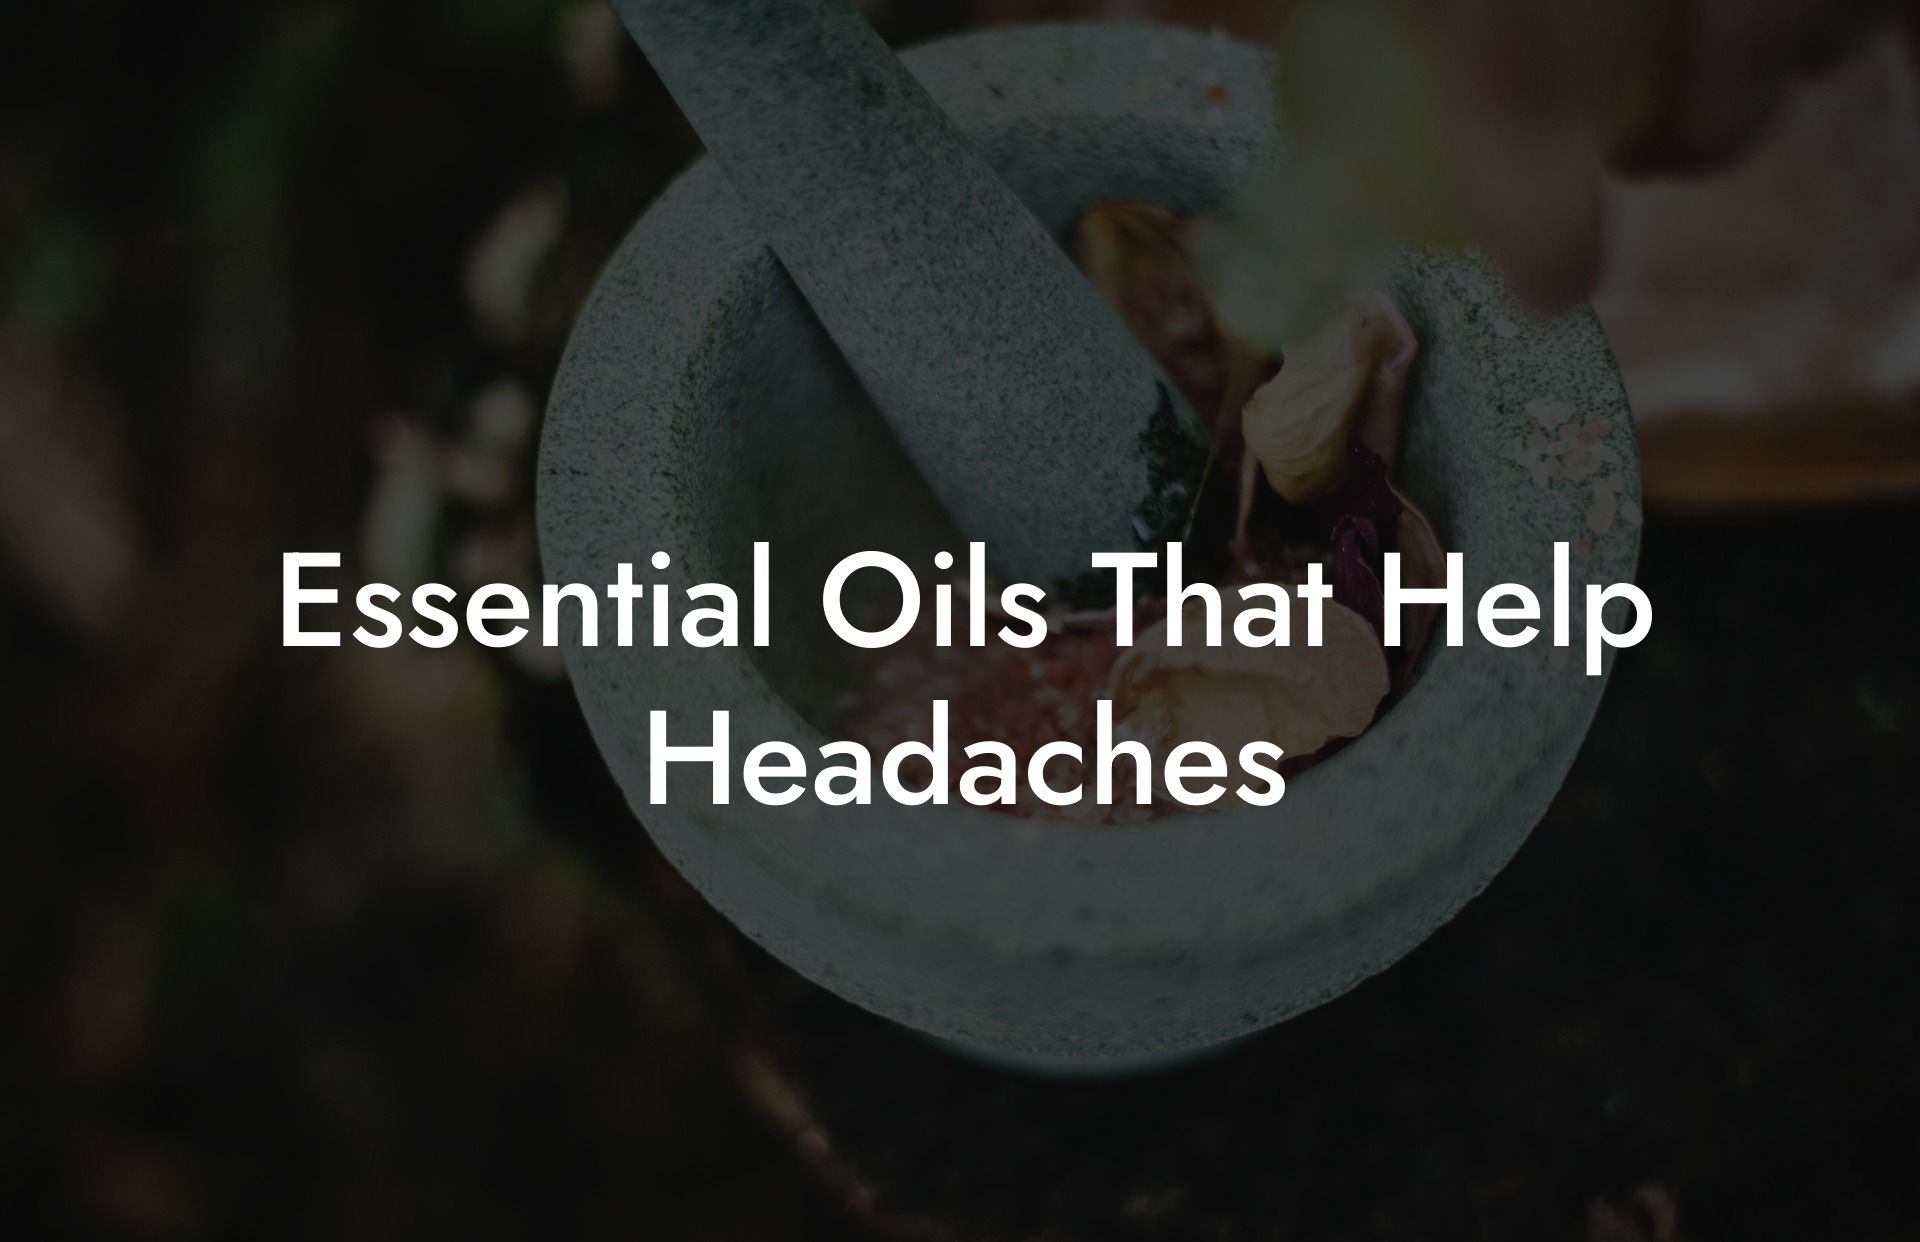 Essential Oils That Help Headaches